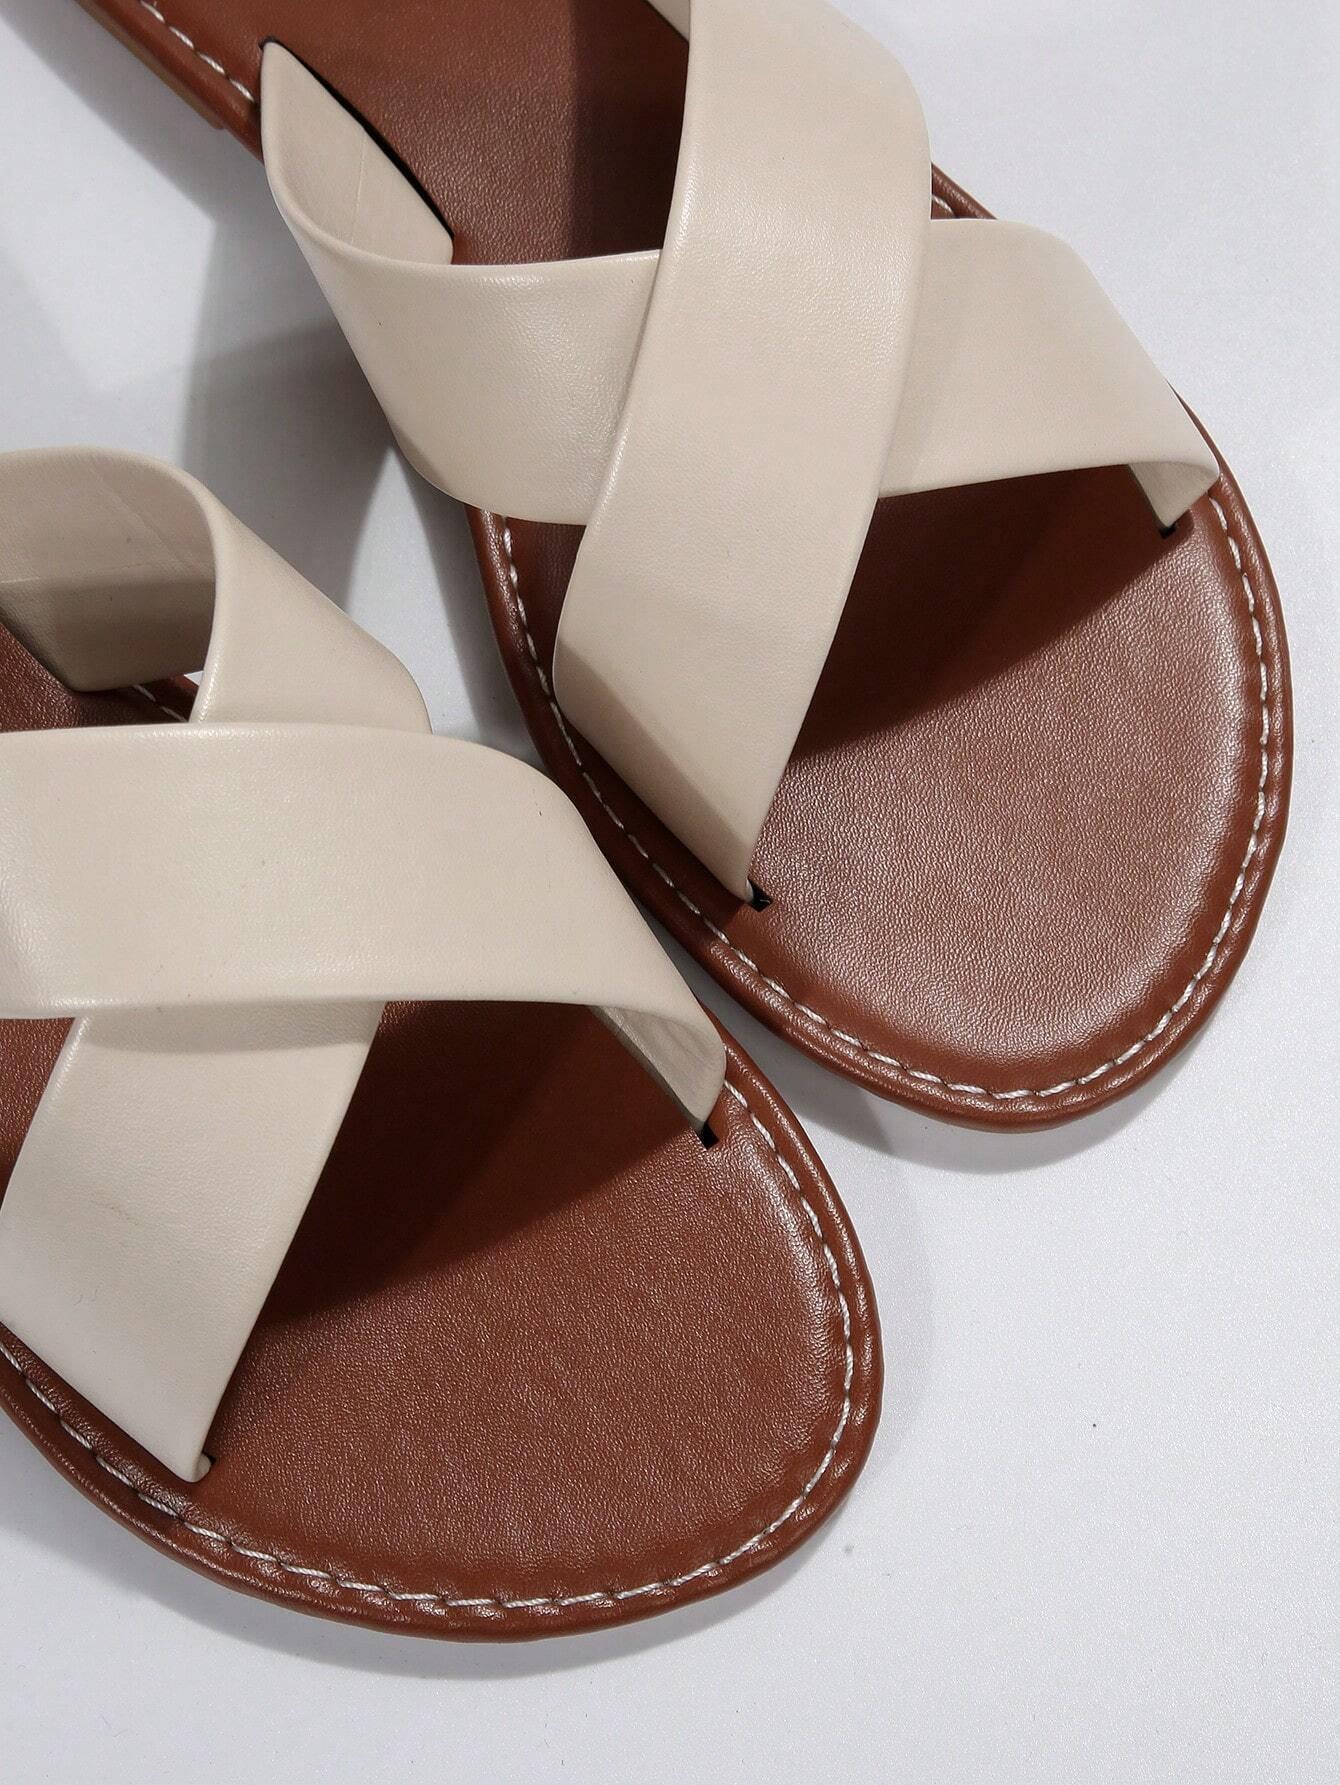 Elegant White Slide Sandals for Women, Minimalist Cross Strap Sandals